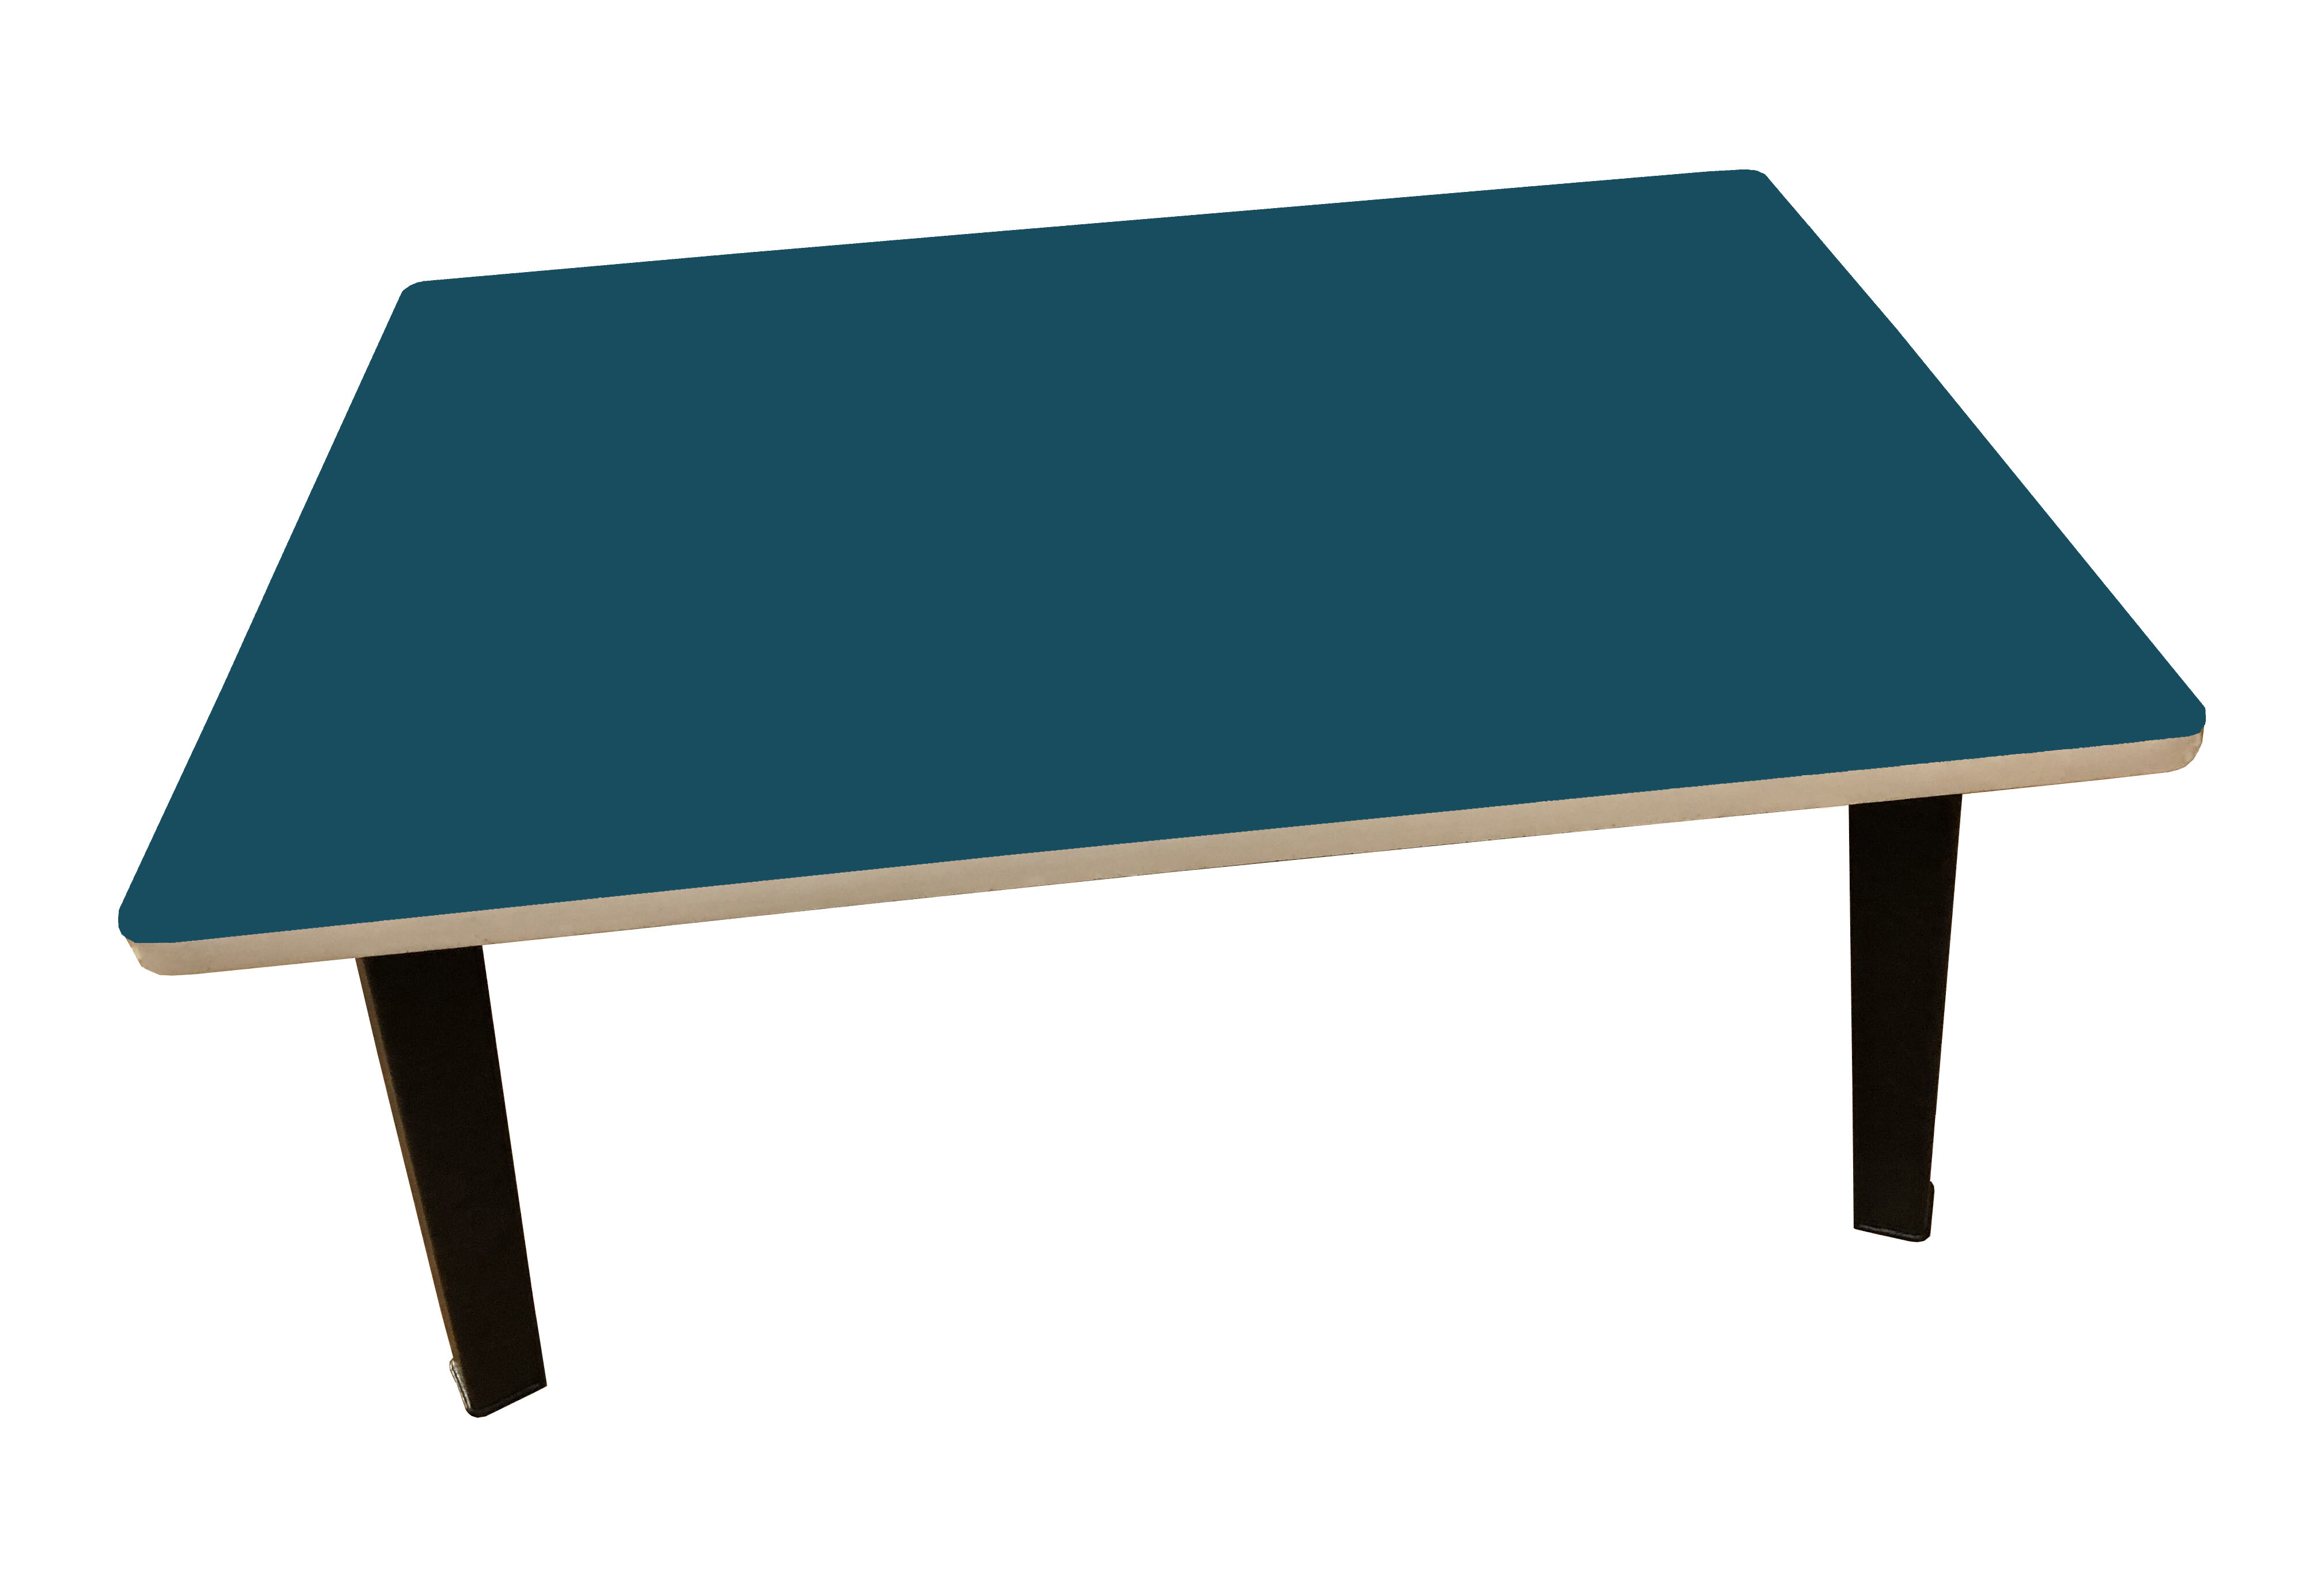 โต๊ะญี่ปุ่น โต๊ะพับ โต๊ะเตี้ย ลายกขค ขนาด 40x60cm. (16”x24”)